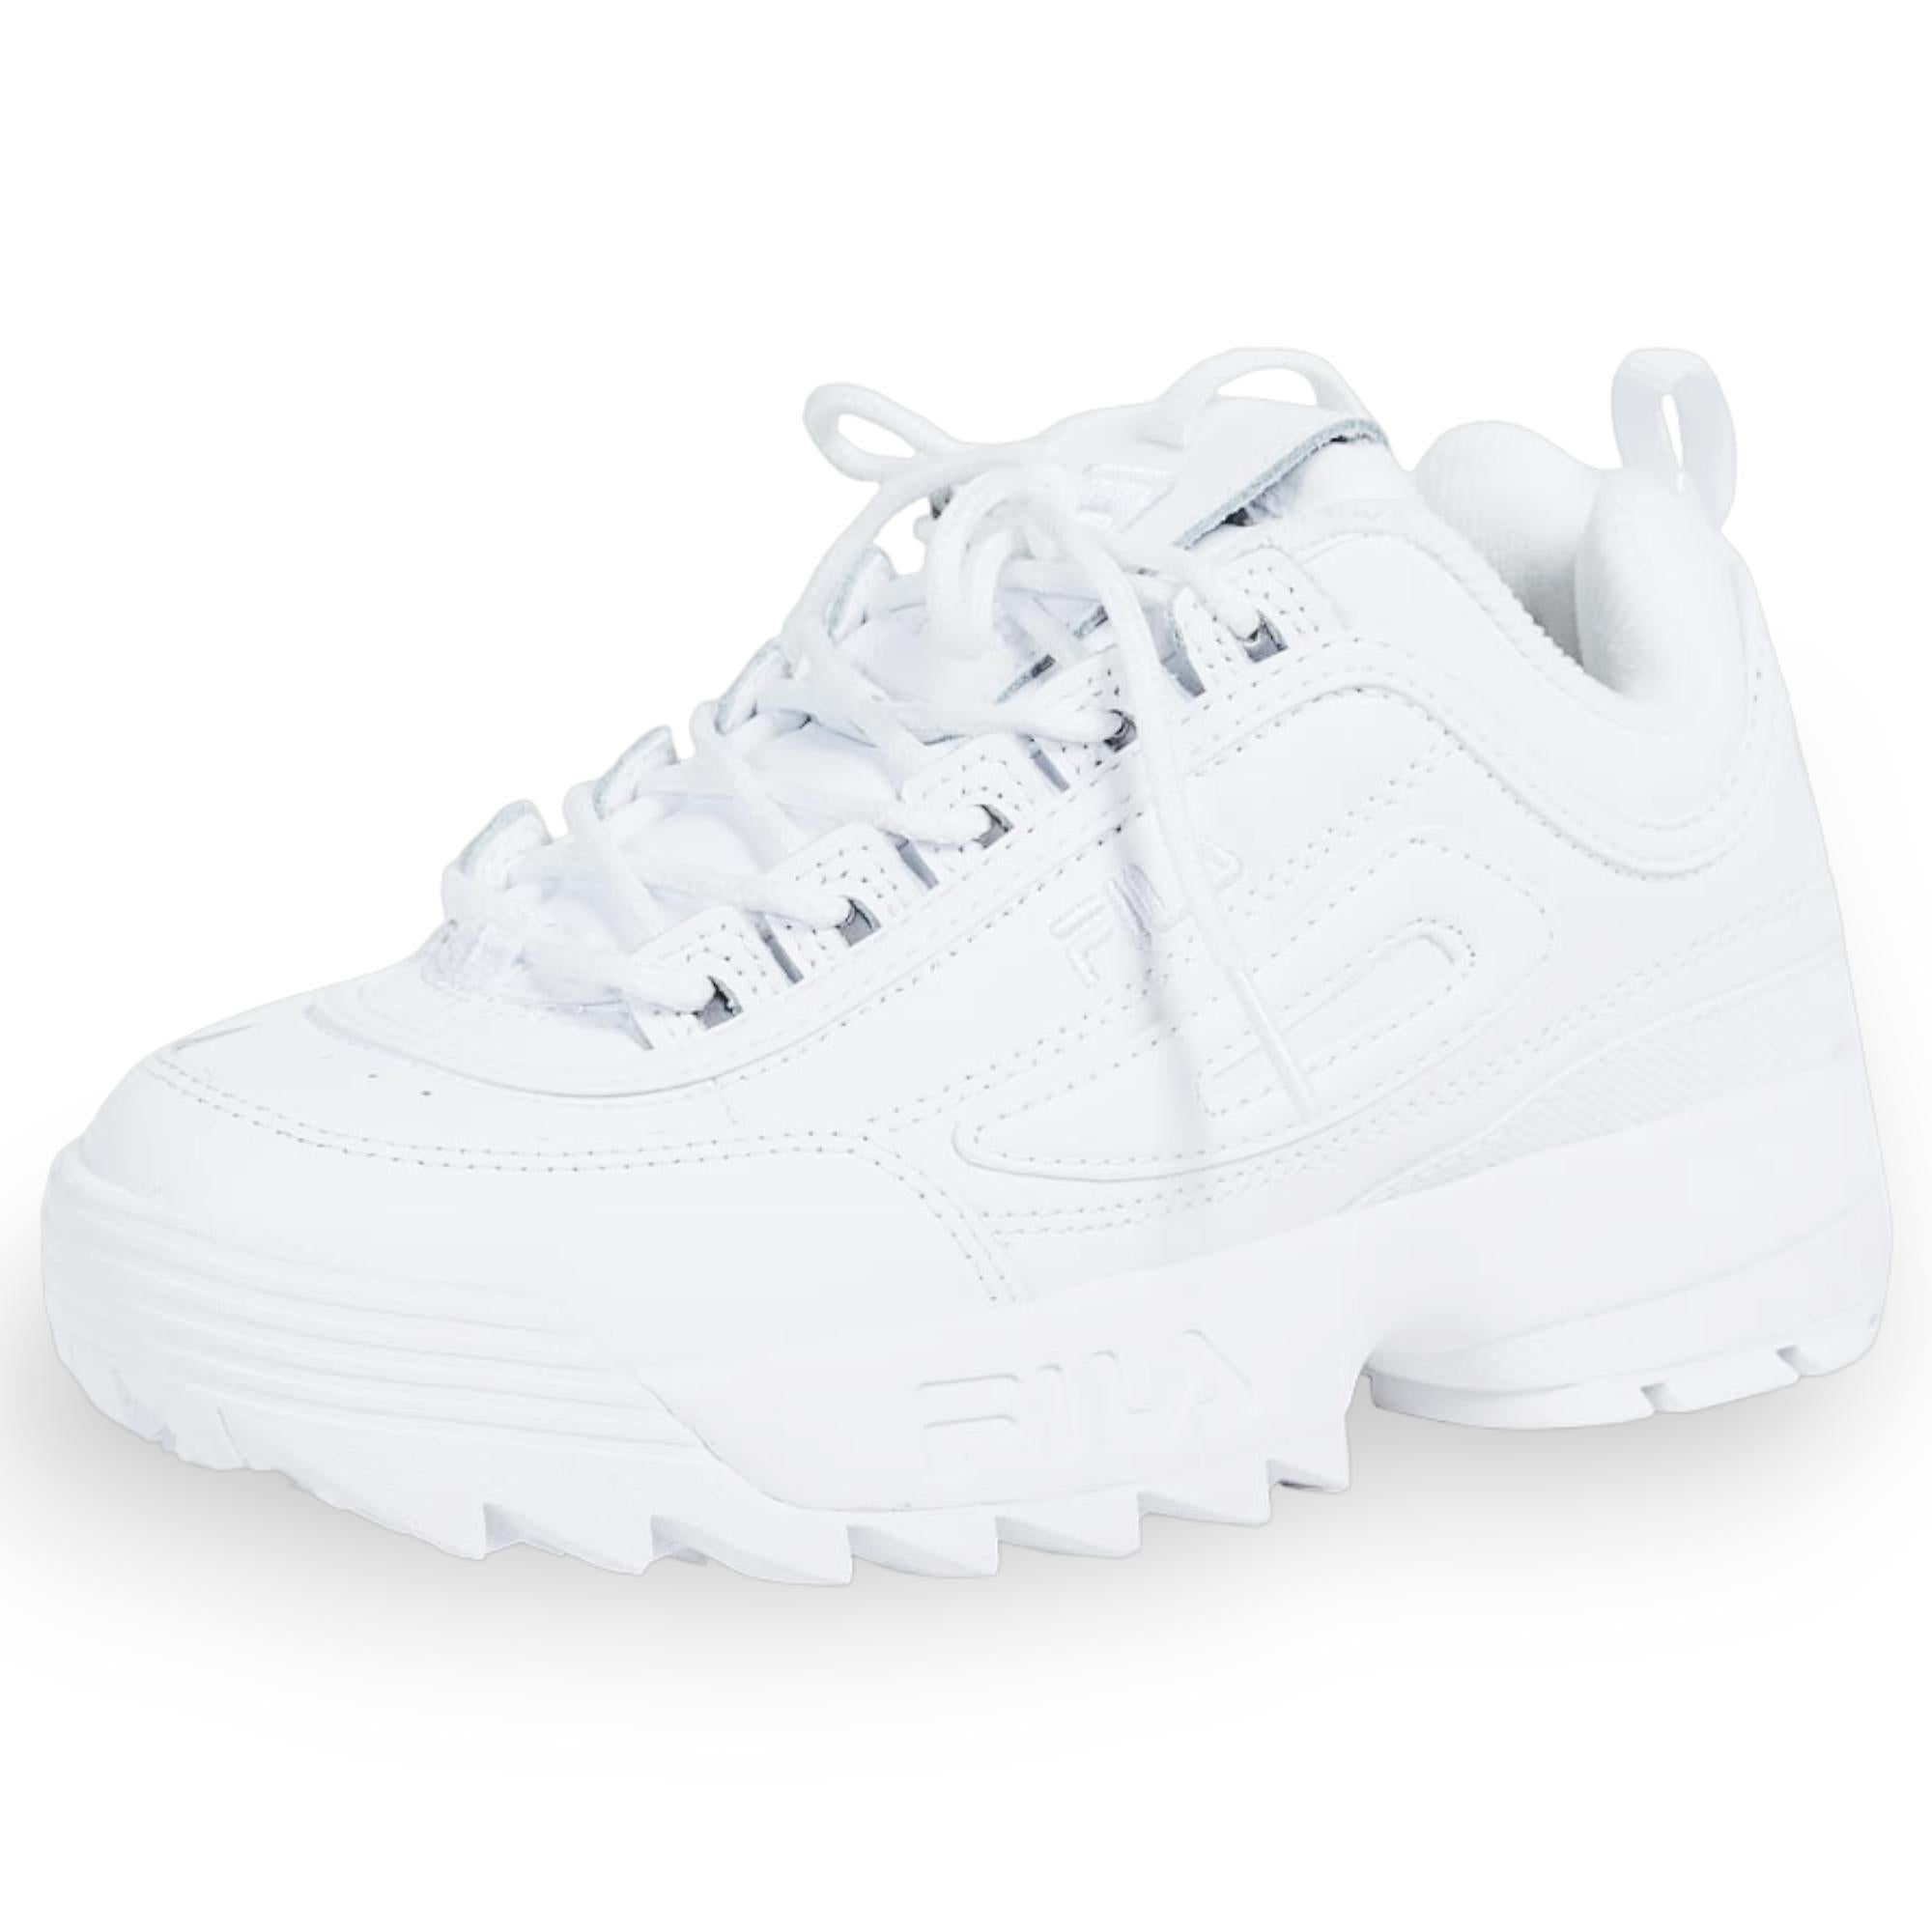 Fila Women's Disruptor 2 II Sneaker All White 10